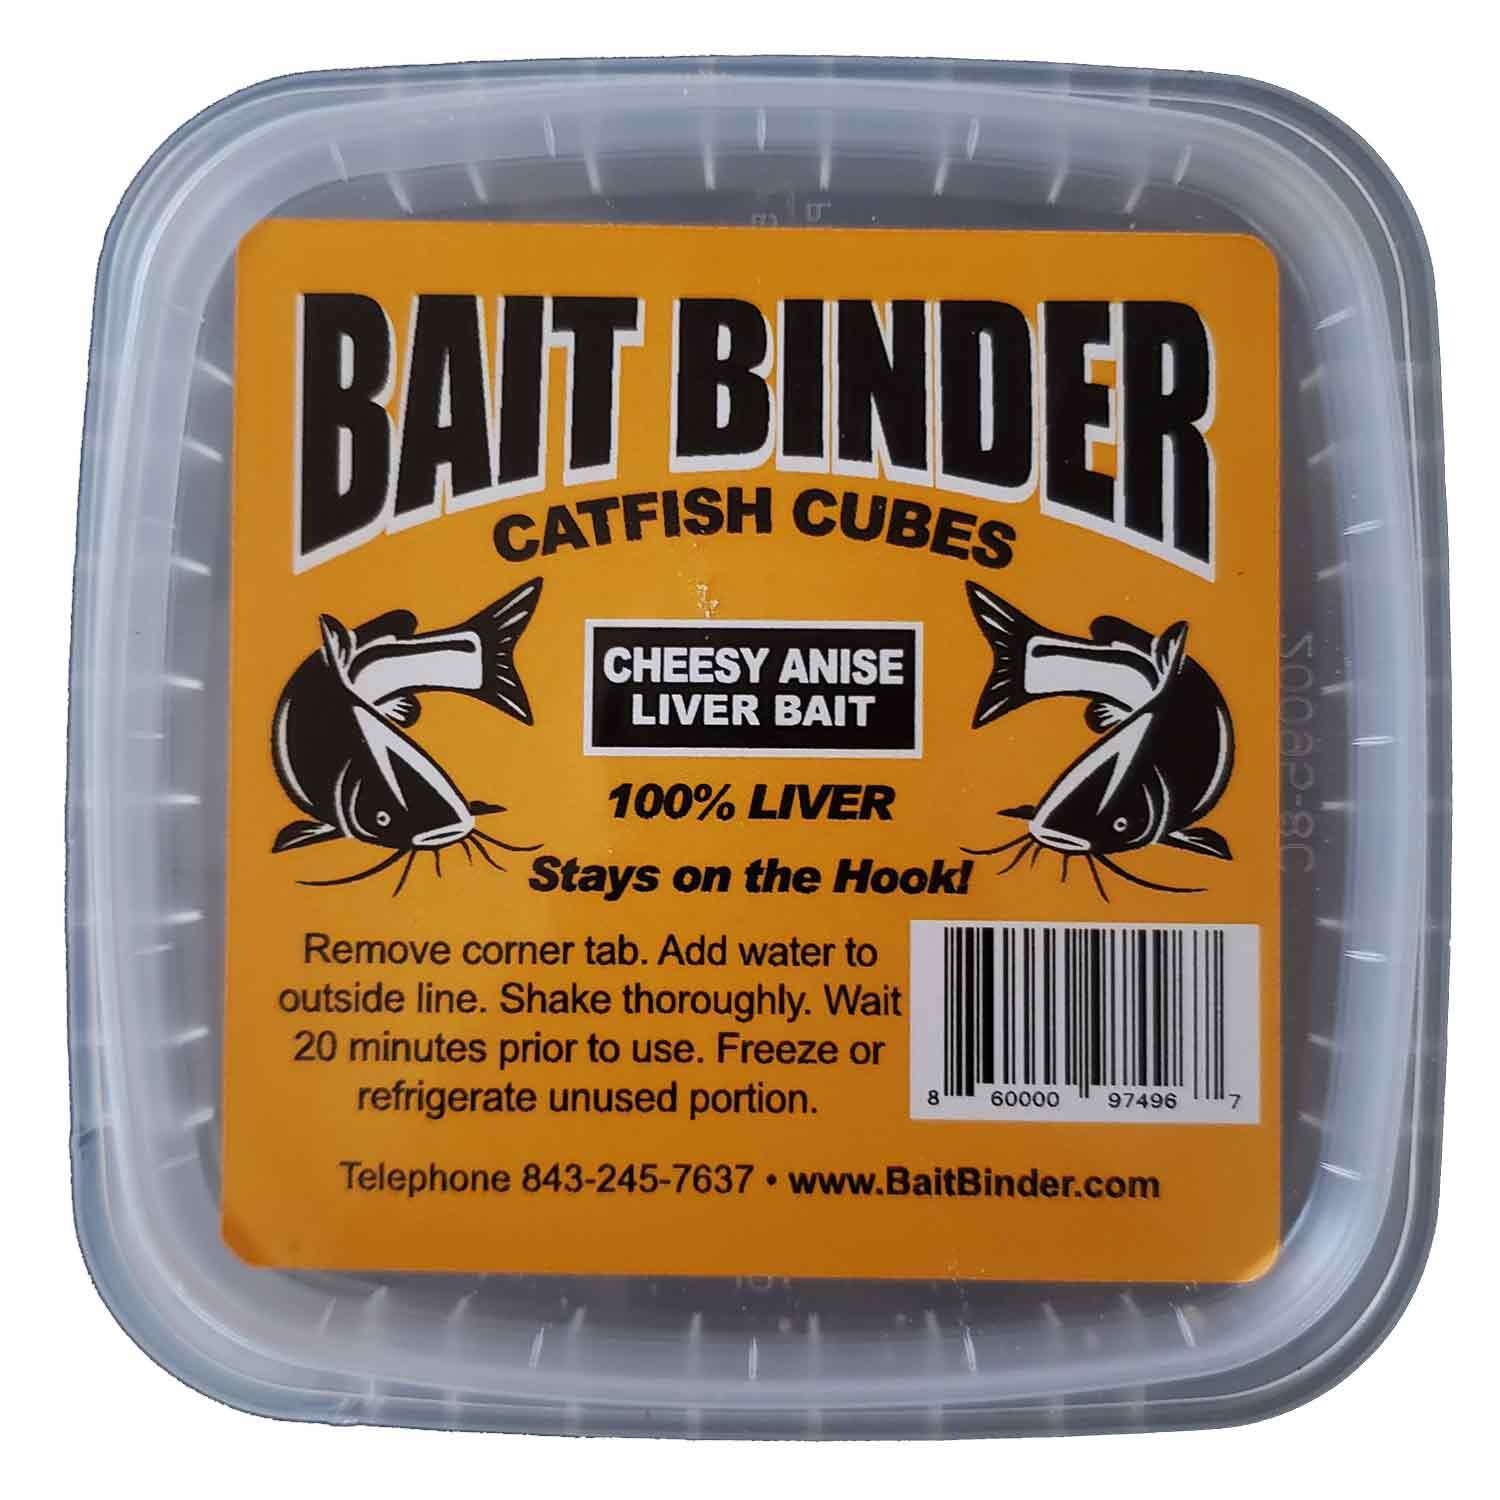 COASTAL BAITS 2 oz. Bait Binder Catfish Cubes Liver Bait, Cheese Anise